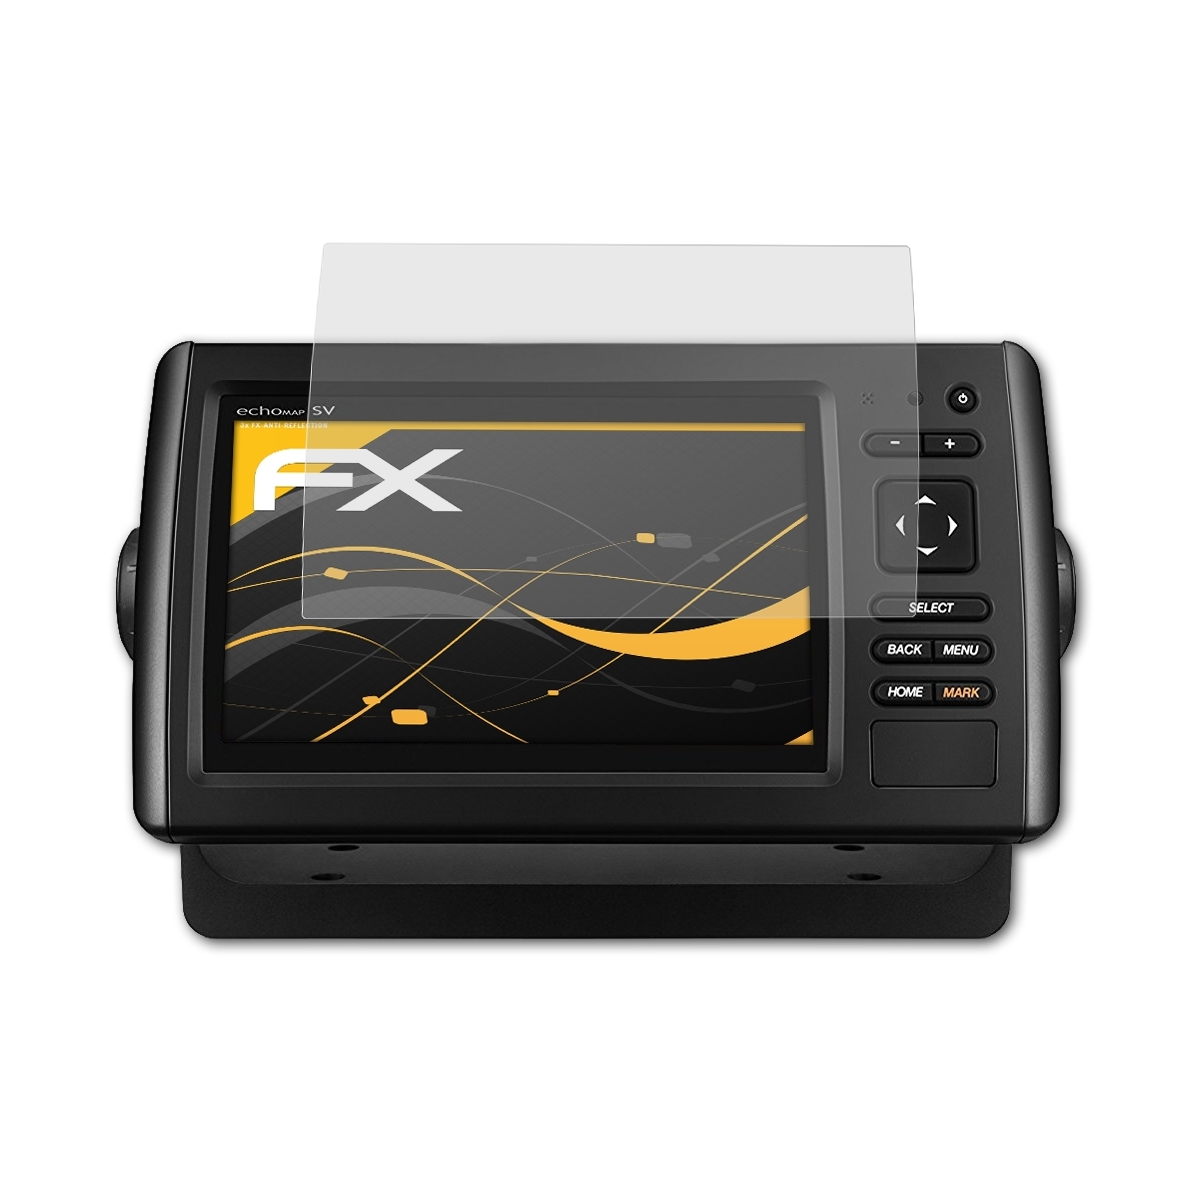 ATFOLIX 3x FX-Antireflex Displayschutz(für Garmin CHIRP 72sv) echoMAP